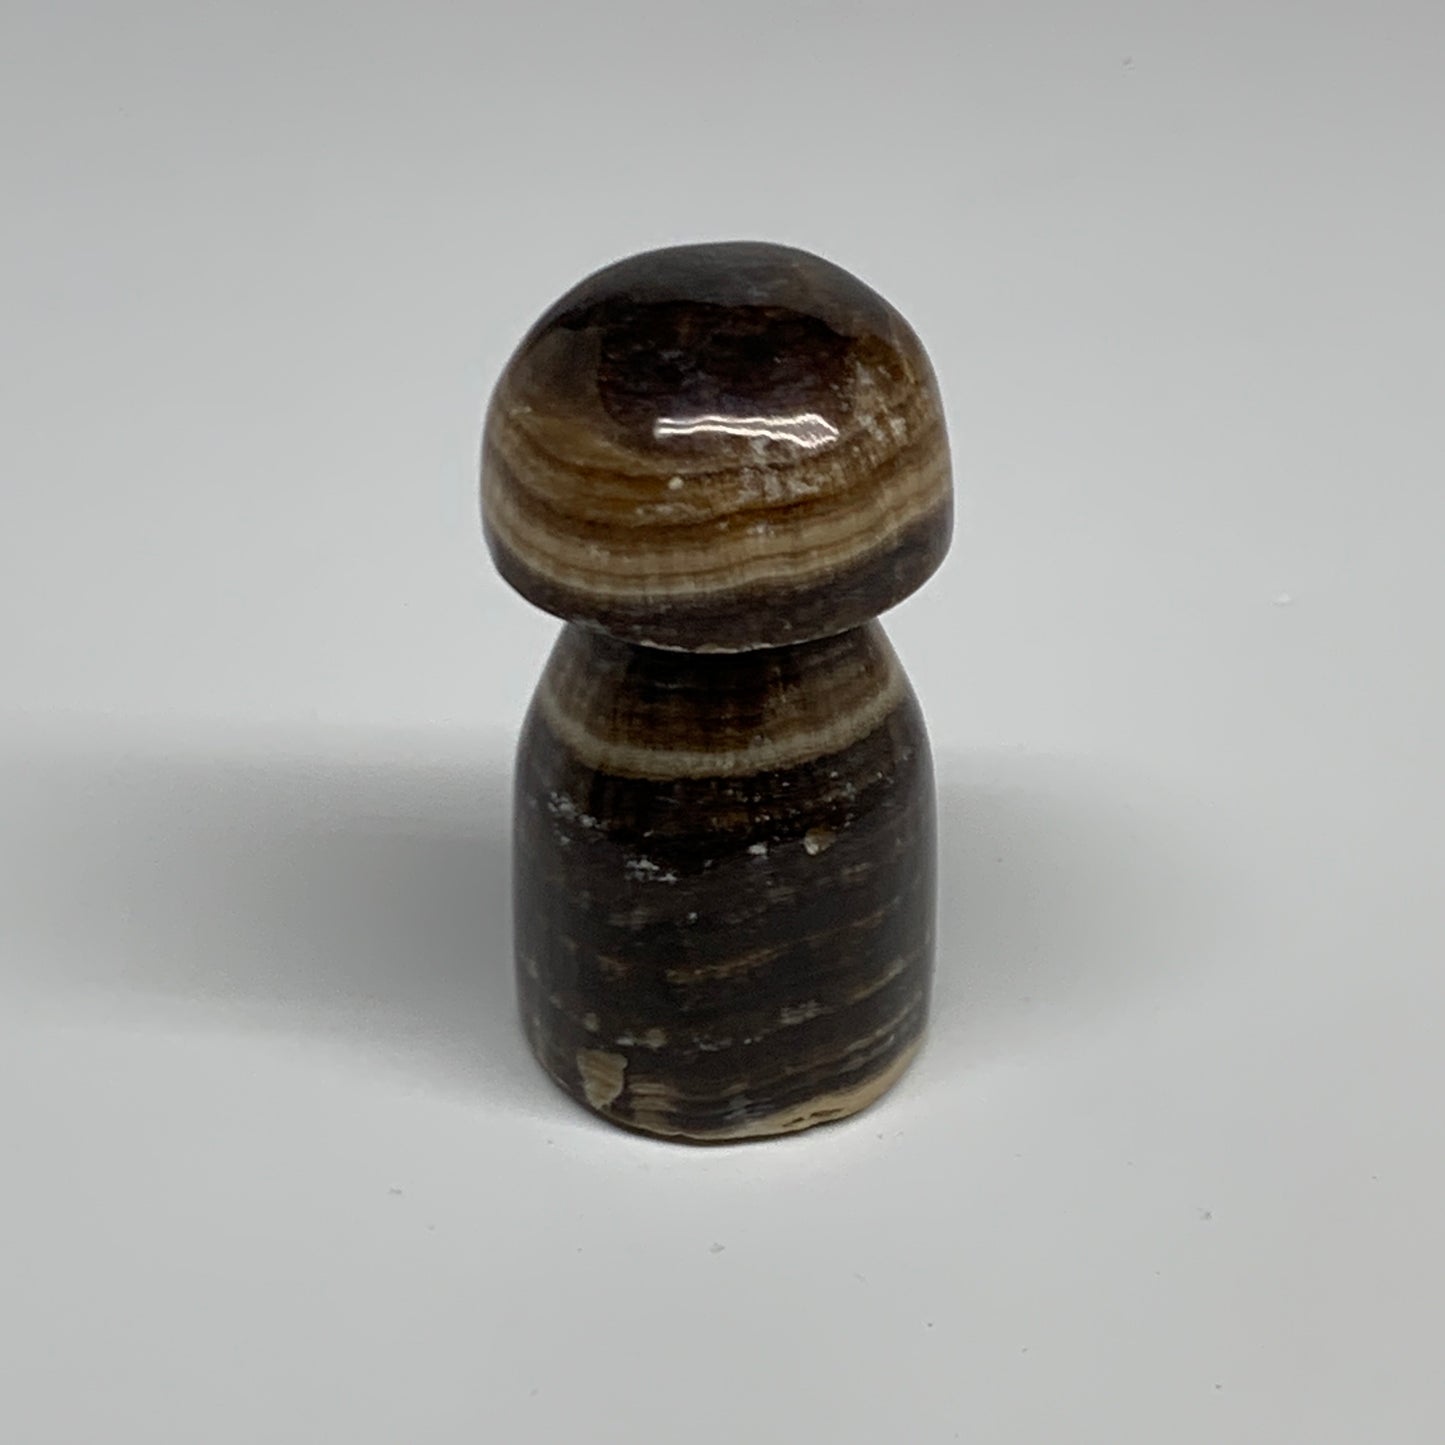 179.7g, 2.9"x1.5" Natural Chocolate Calcite Mushroom Gemstone @Pakistan, B30167